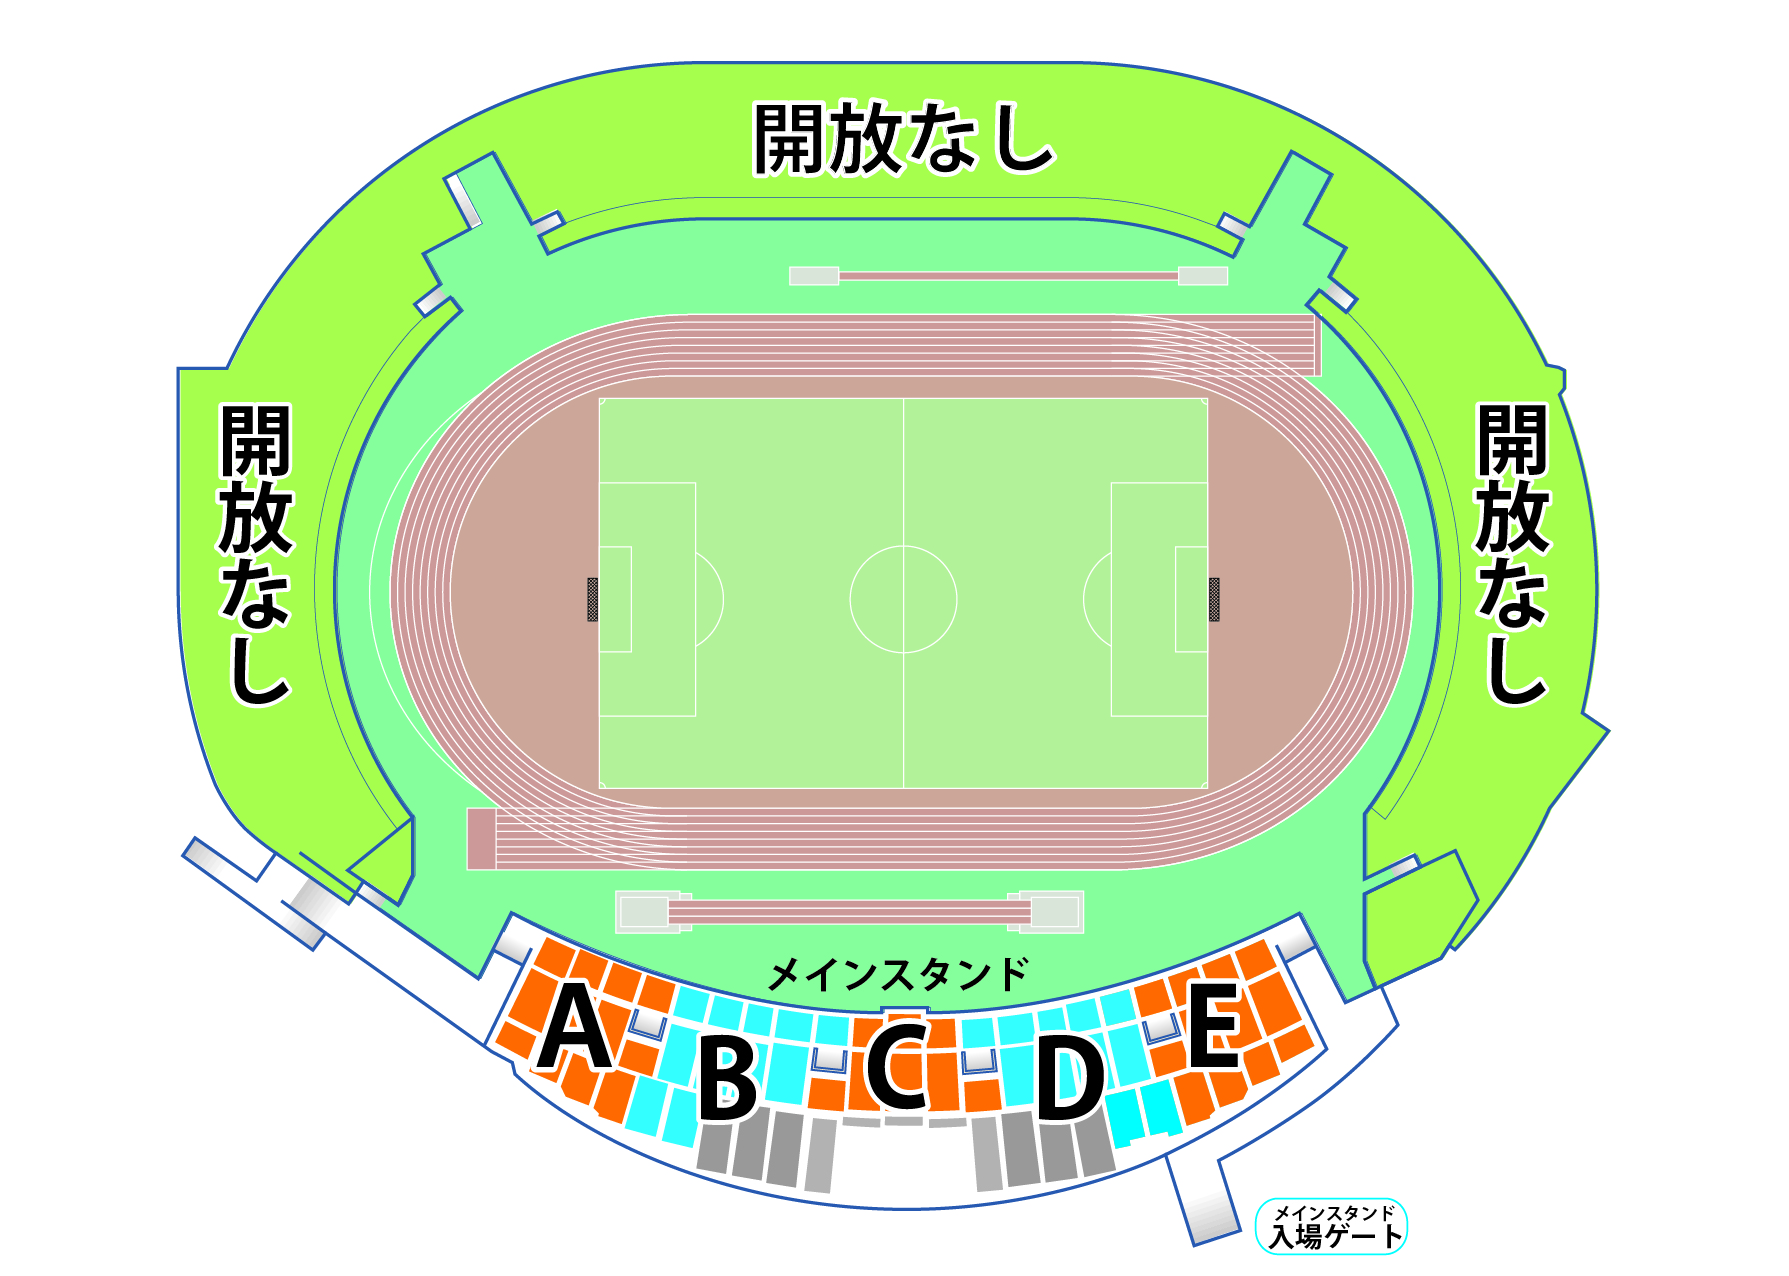 シーズンにおける席割 チケット購入方法変更について 福島ユナイテッドfc 公式サイト Fukushima United Fc Official Website